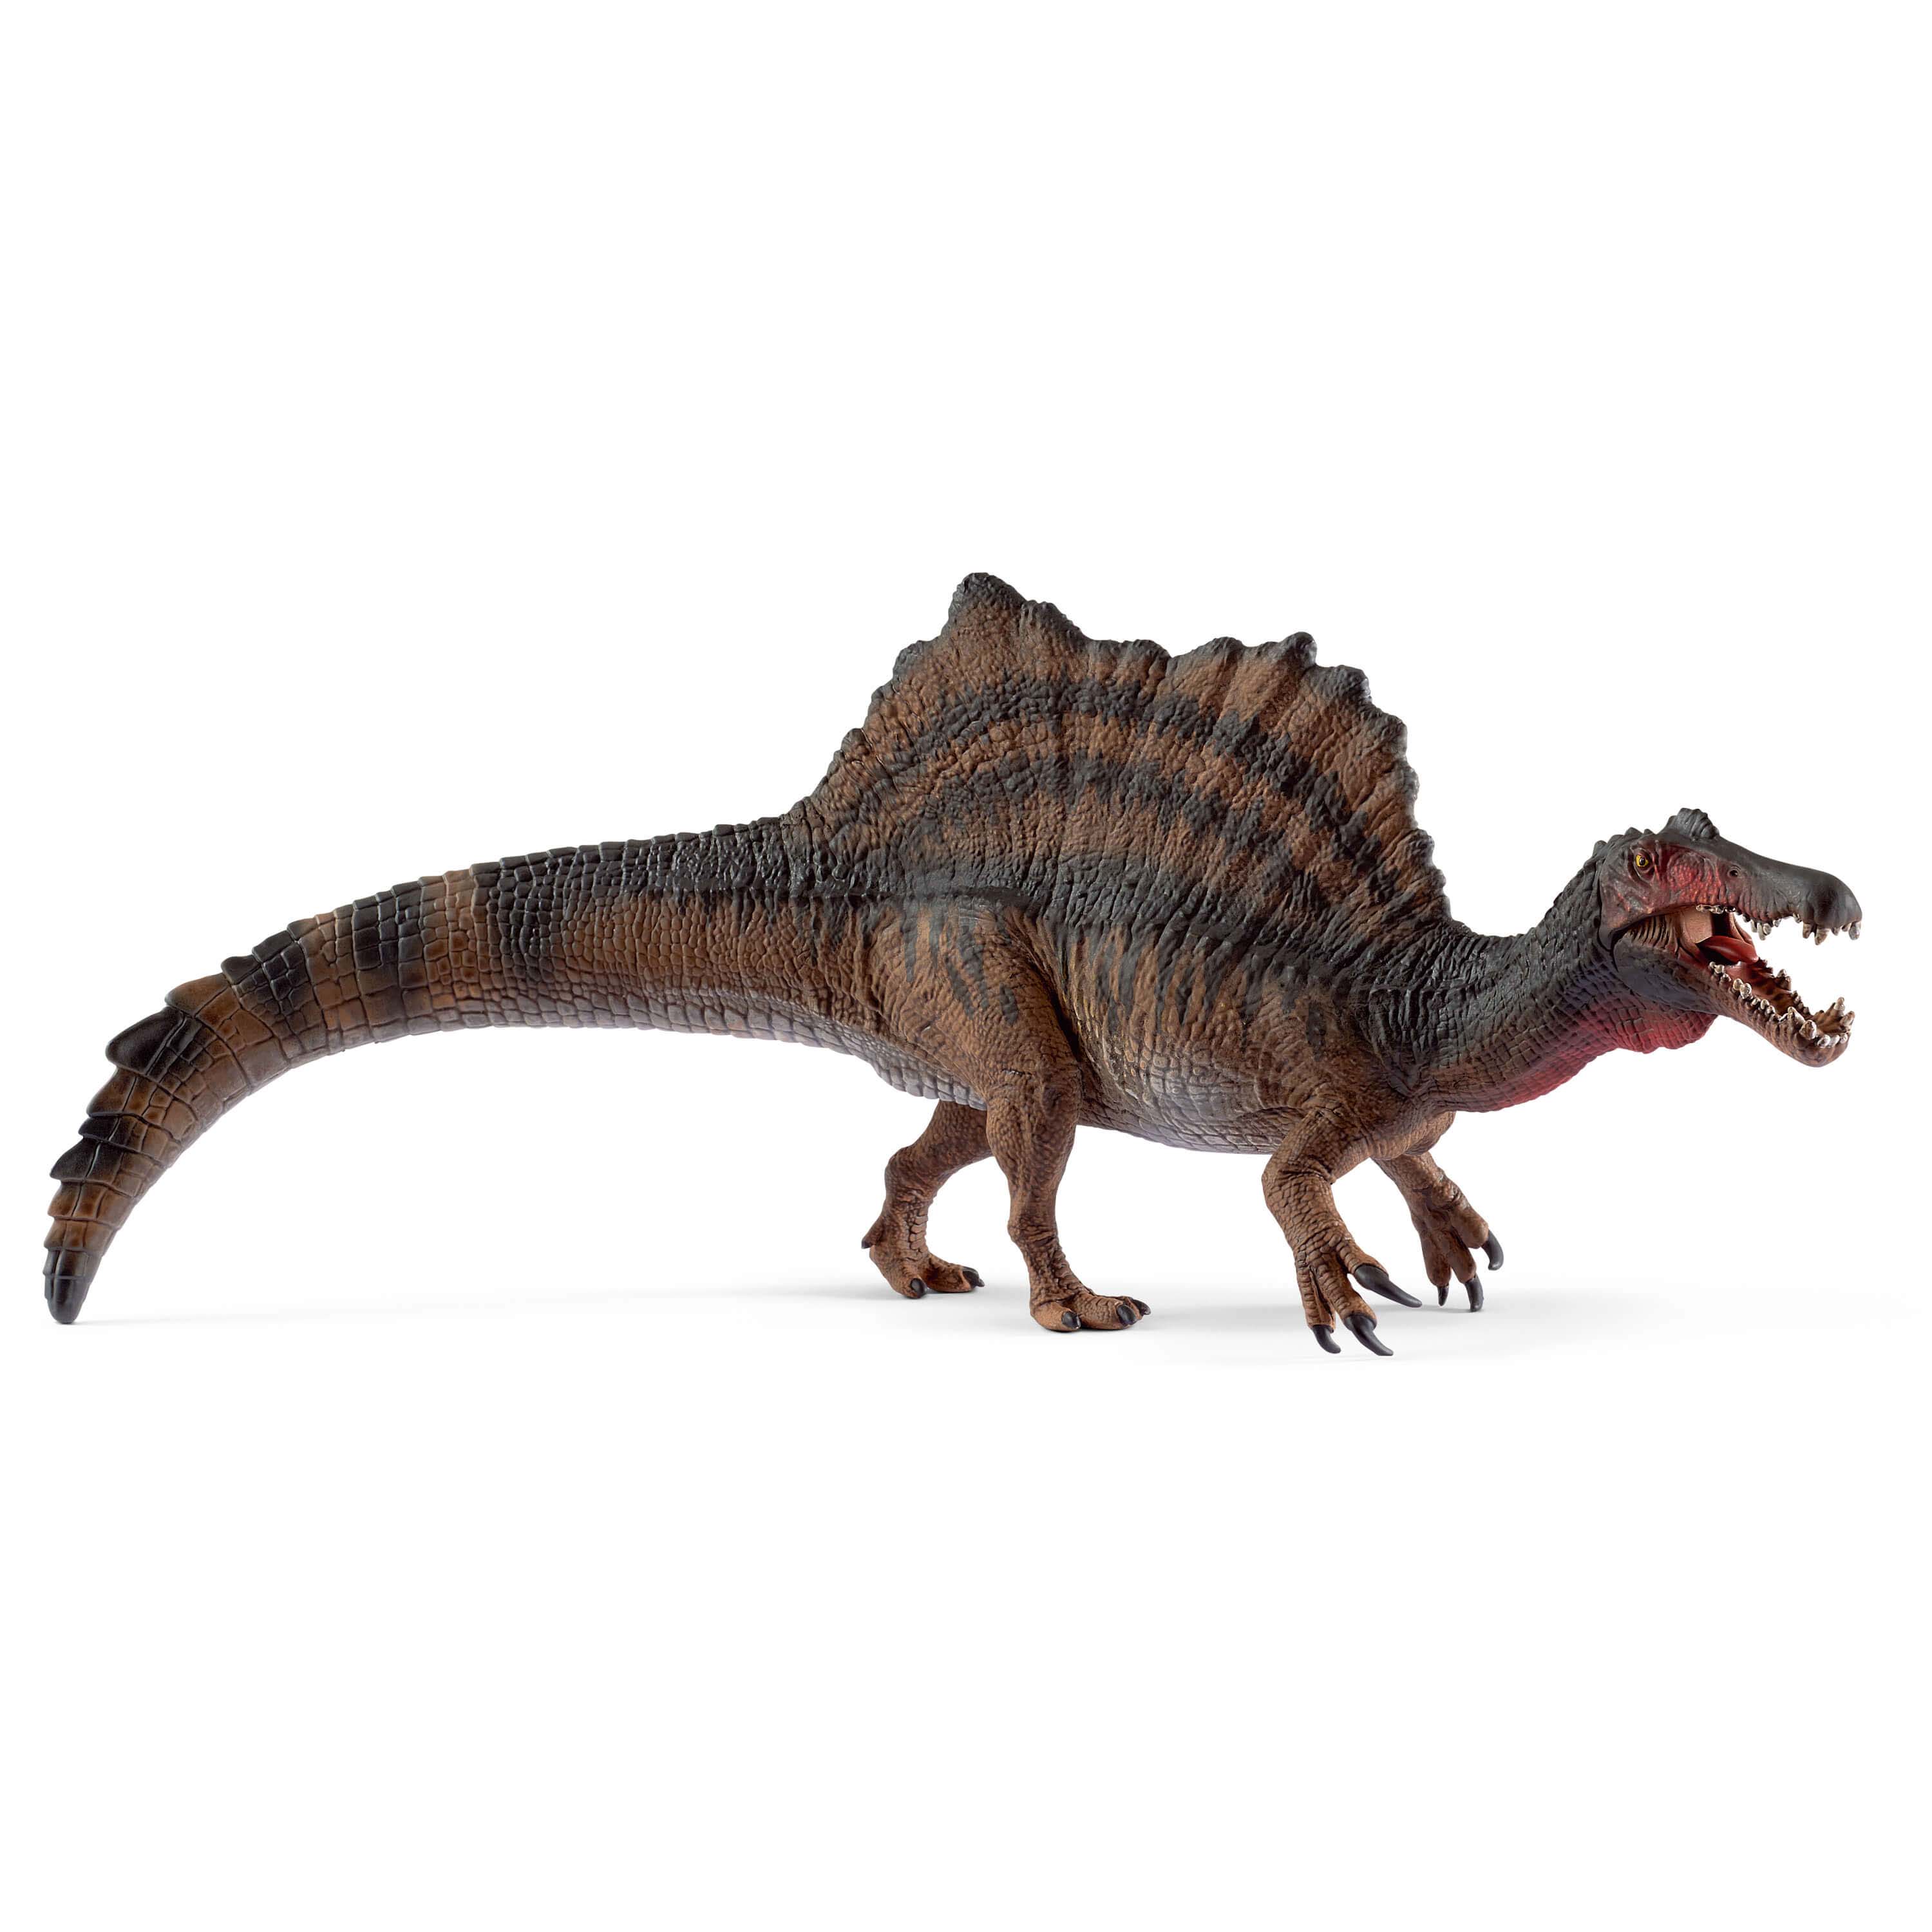 Schleich 15009 - Dinosaurs, Spinosaurus, Tierfigur